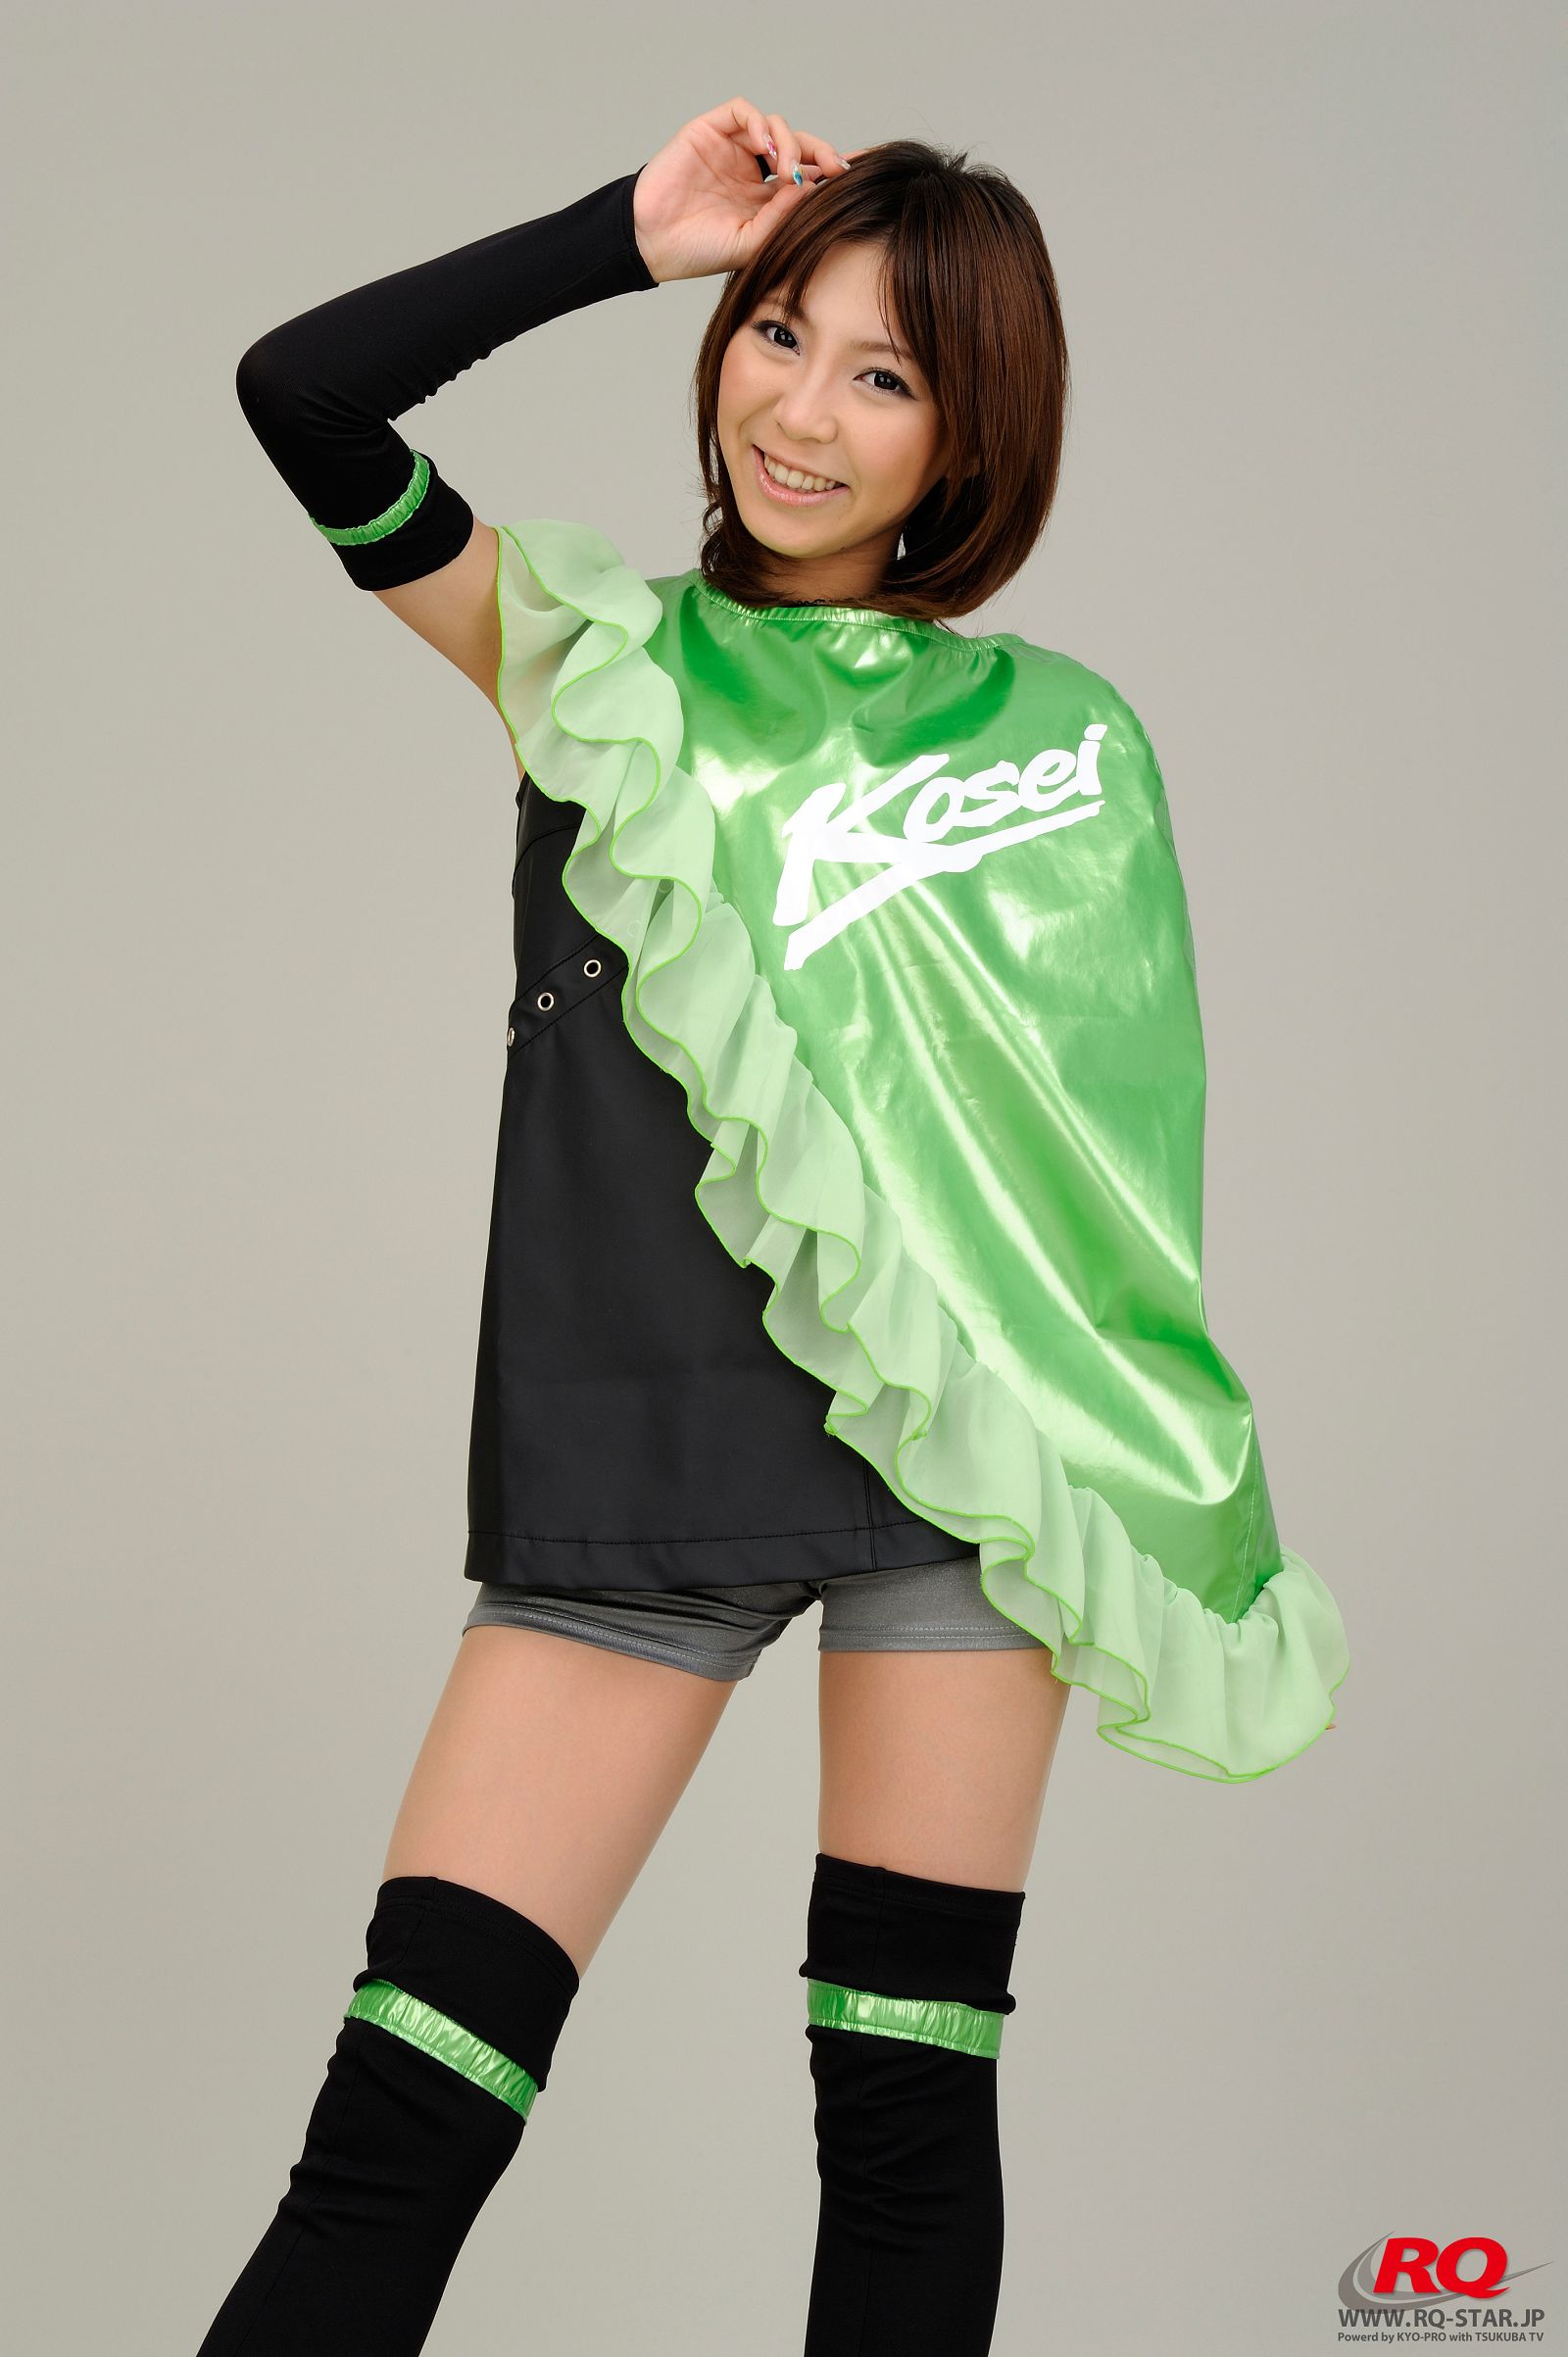 [RQ-STAR美女] NO.0051 Ayami (あやみ) Race Queen - 2008 Team Kosei1